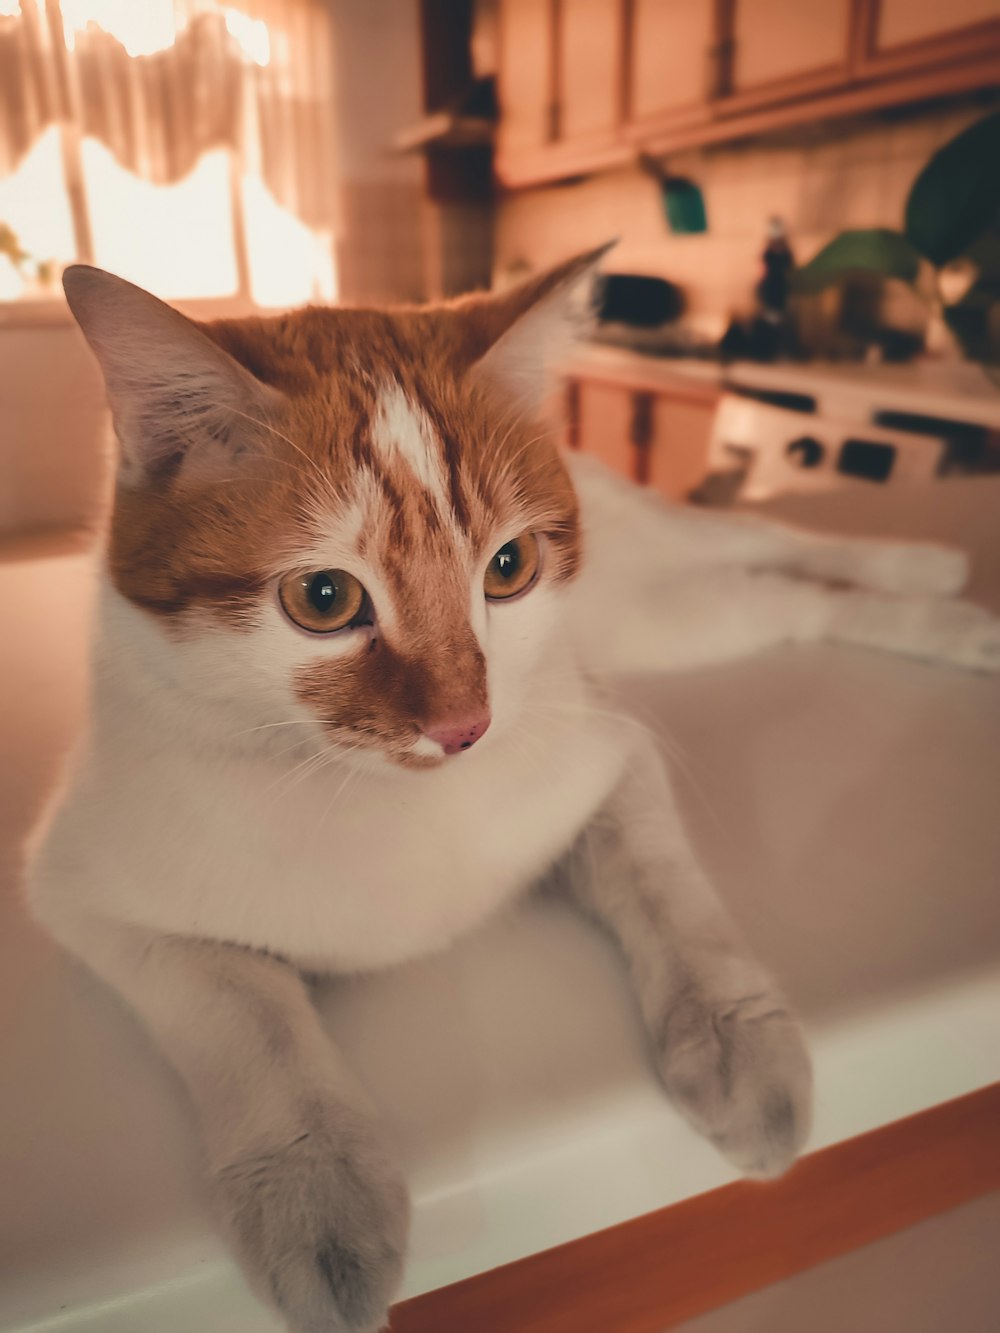 a cat sitting in a sink